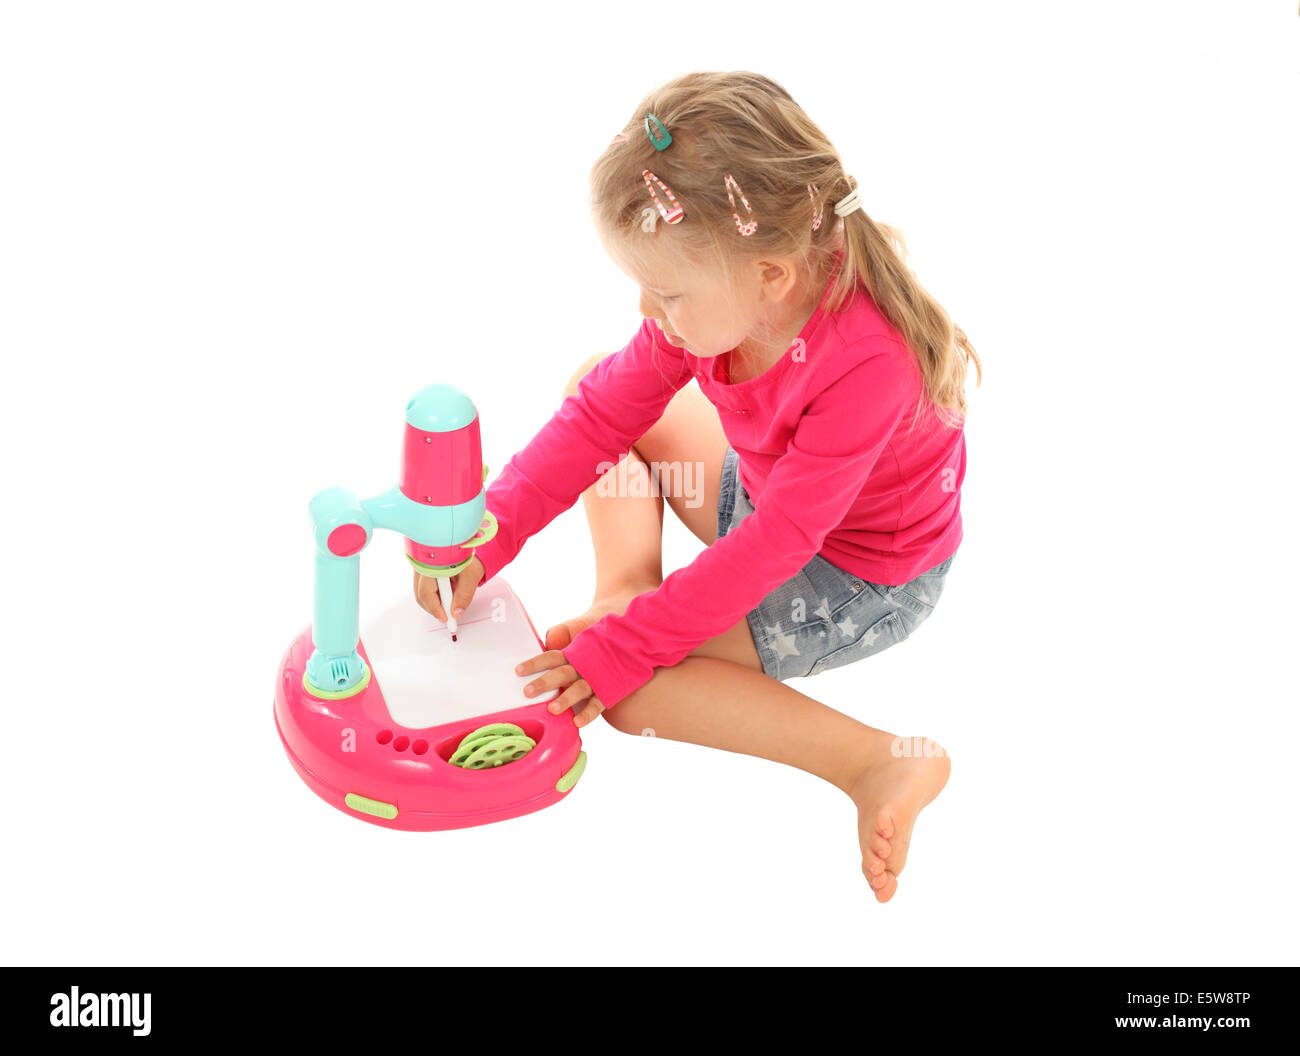 Kleines Mädchen mit einem Spielzeug-Projektor Bild zeichnen Stockfoto